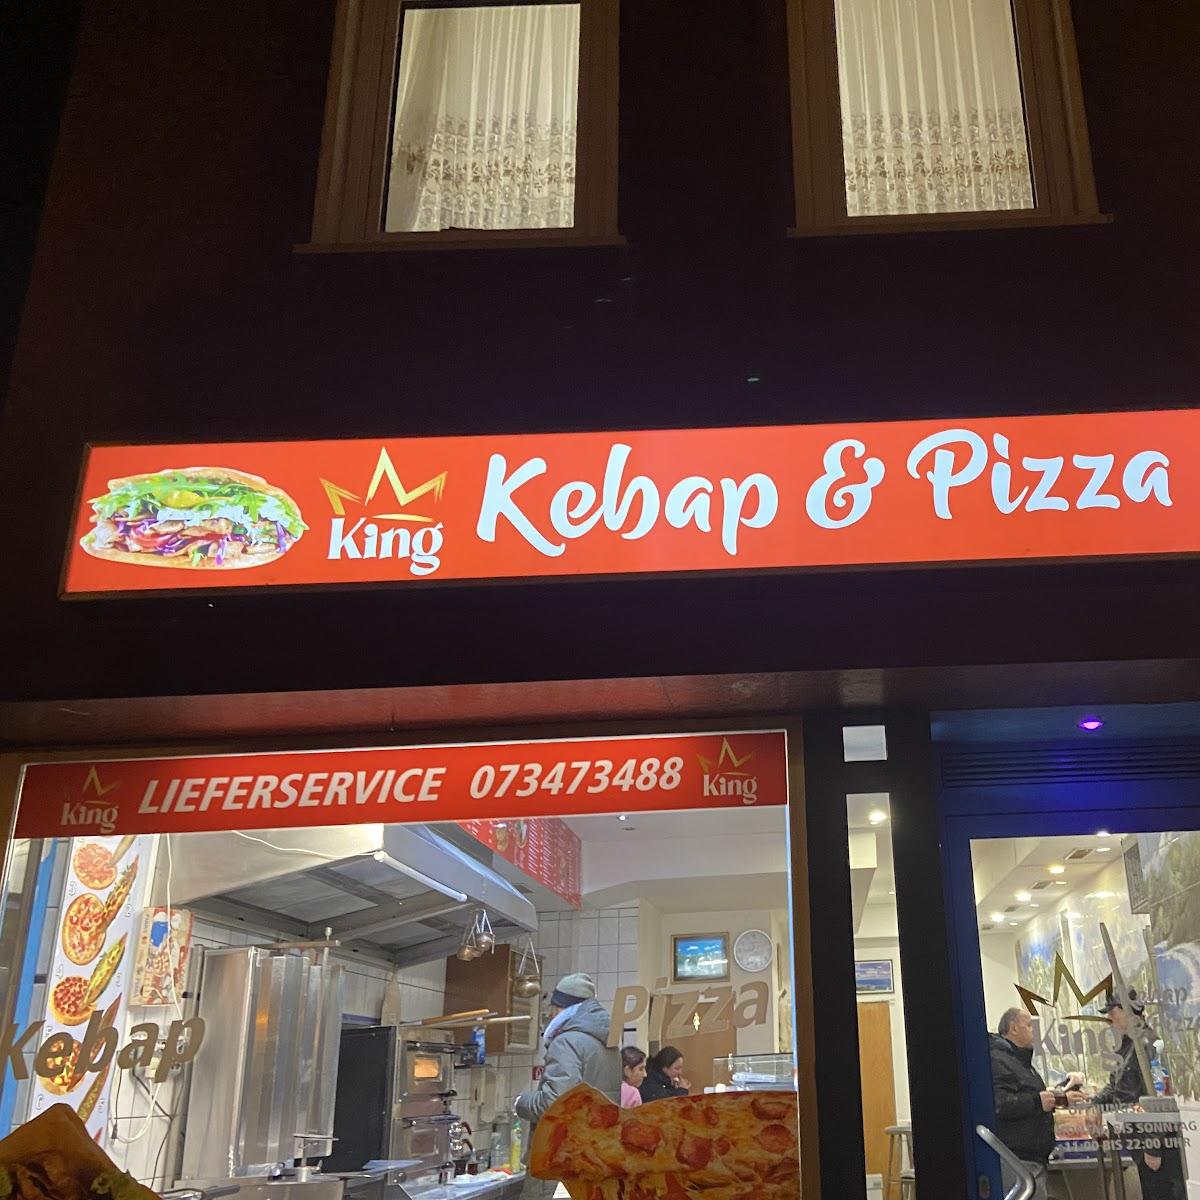 Restaurant "King Kebap &Pizza" in Dietenheim